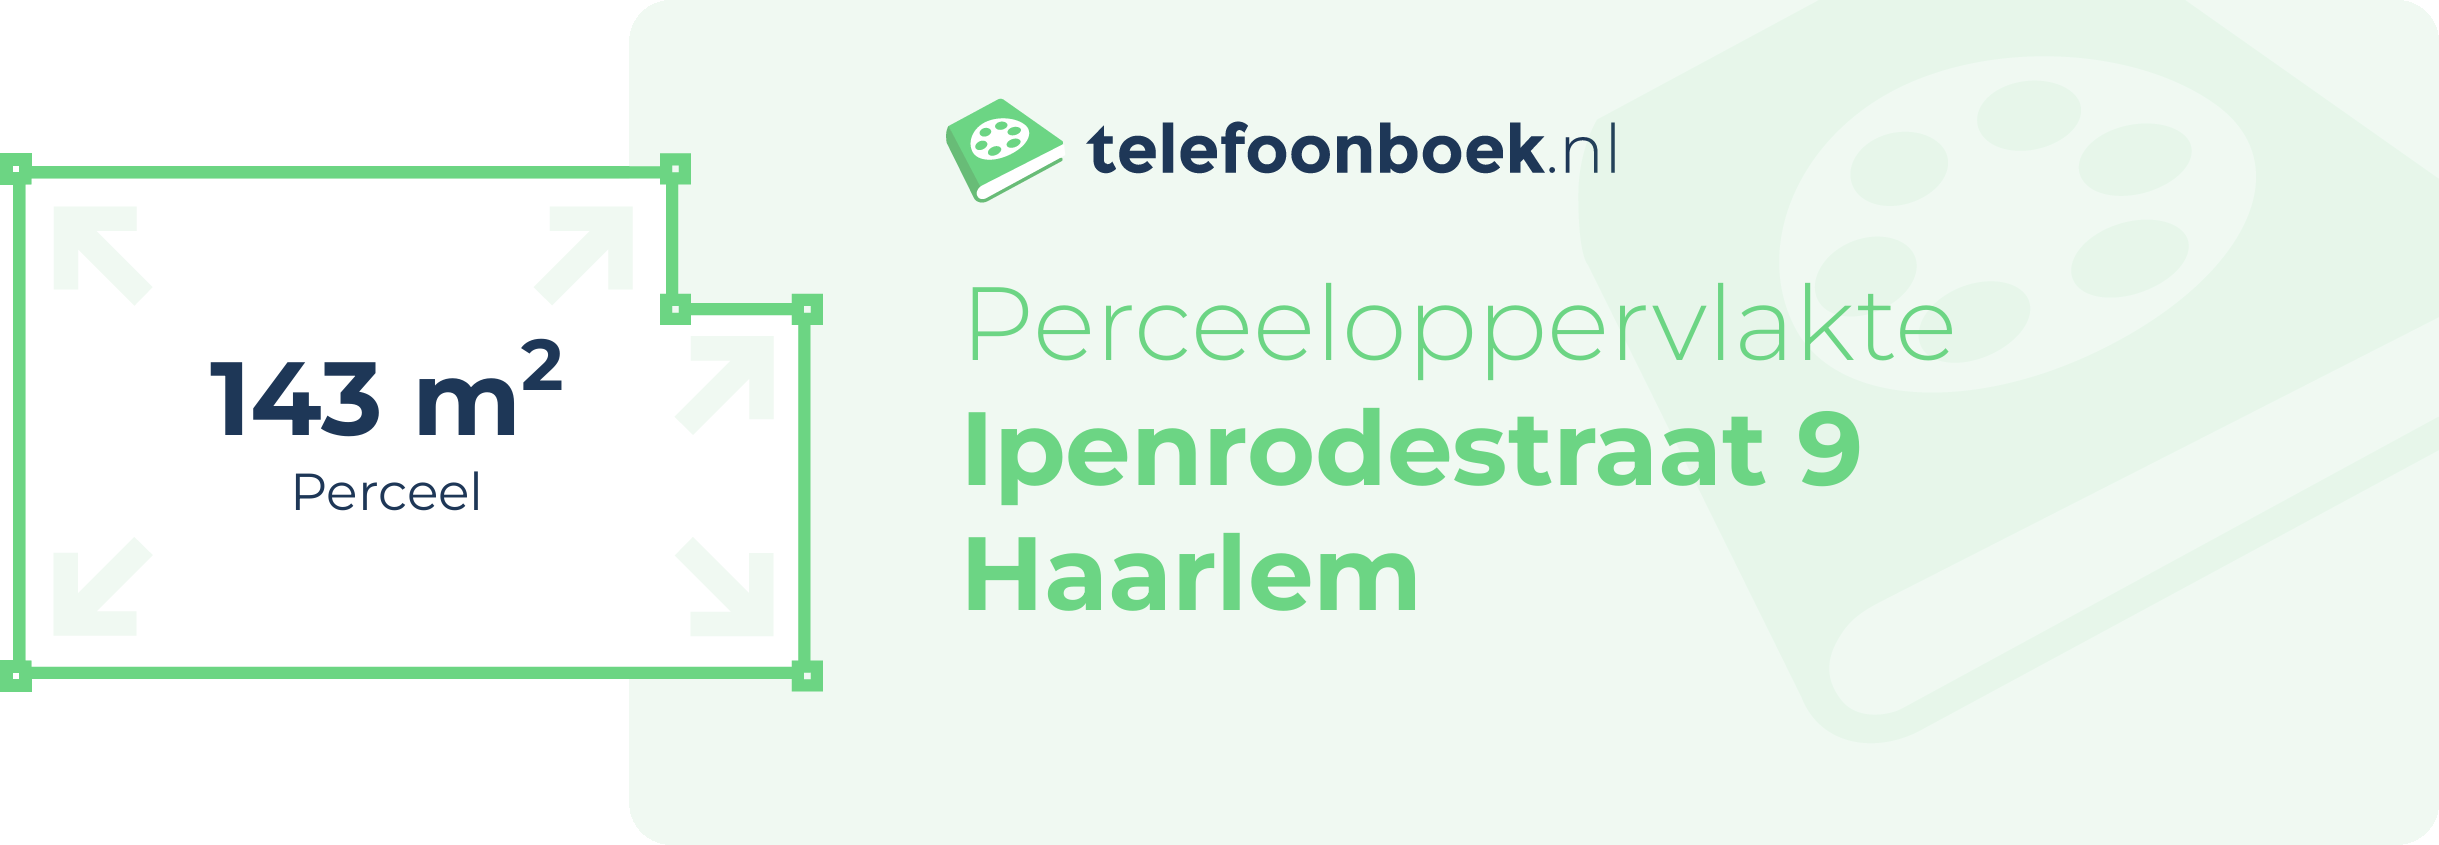 Perceeloppervlakte Ipenrodestraat 9 Haarlem